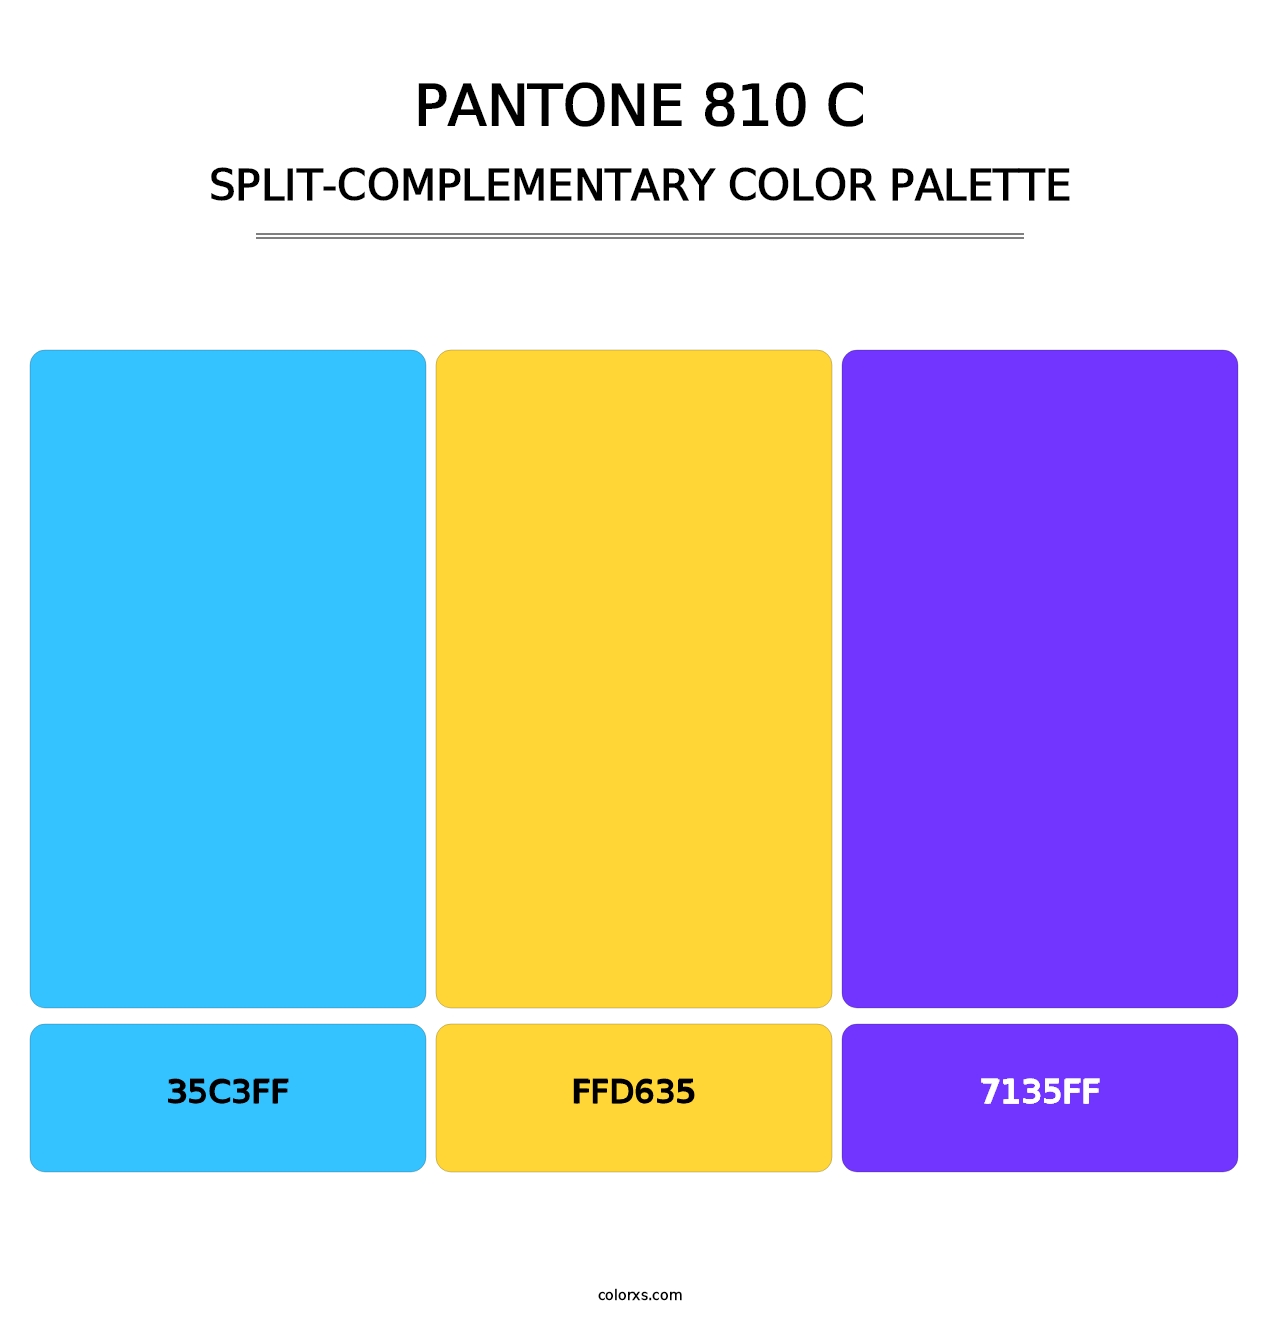 PANTONE 810 C - Split-Complementary Color Palette